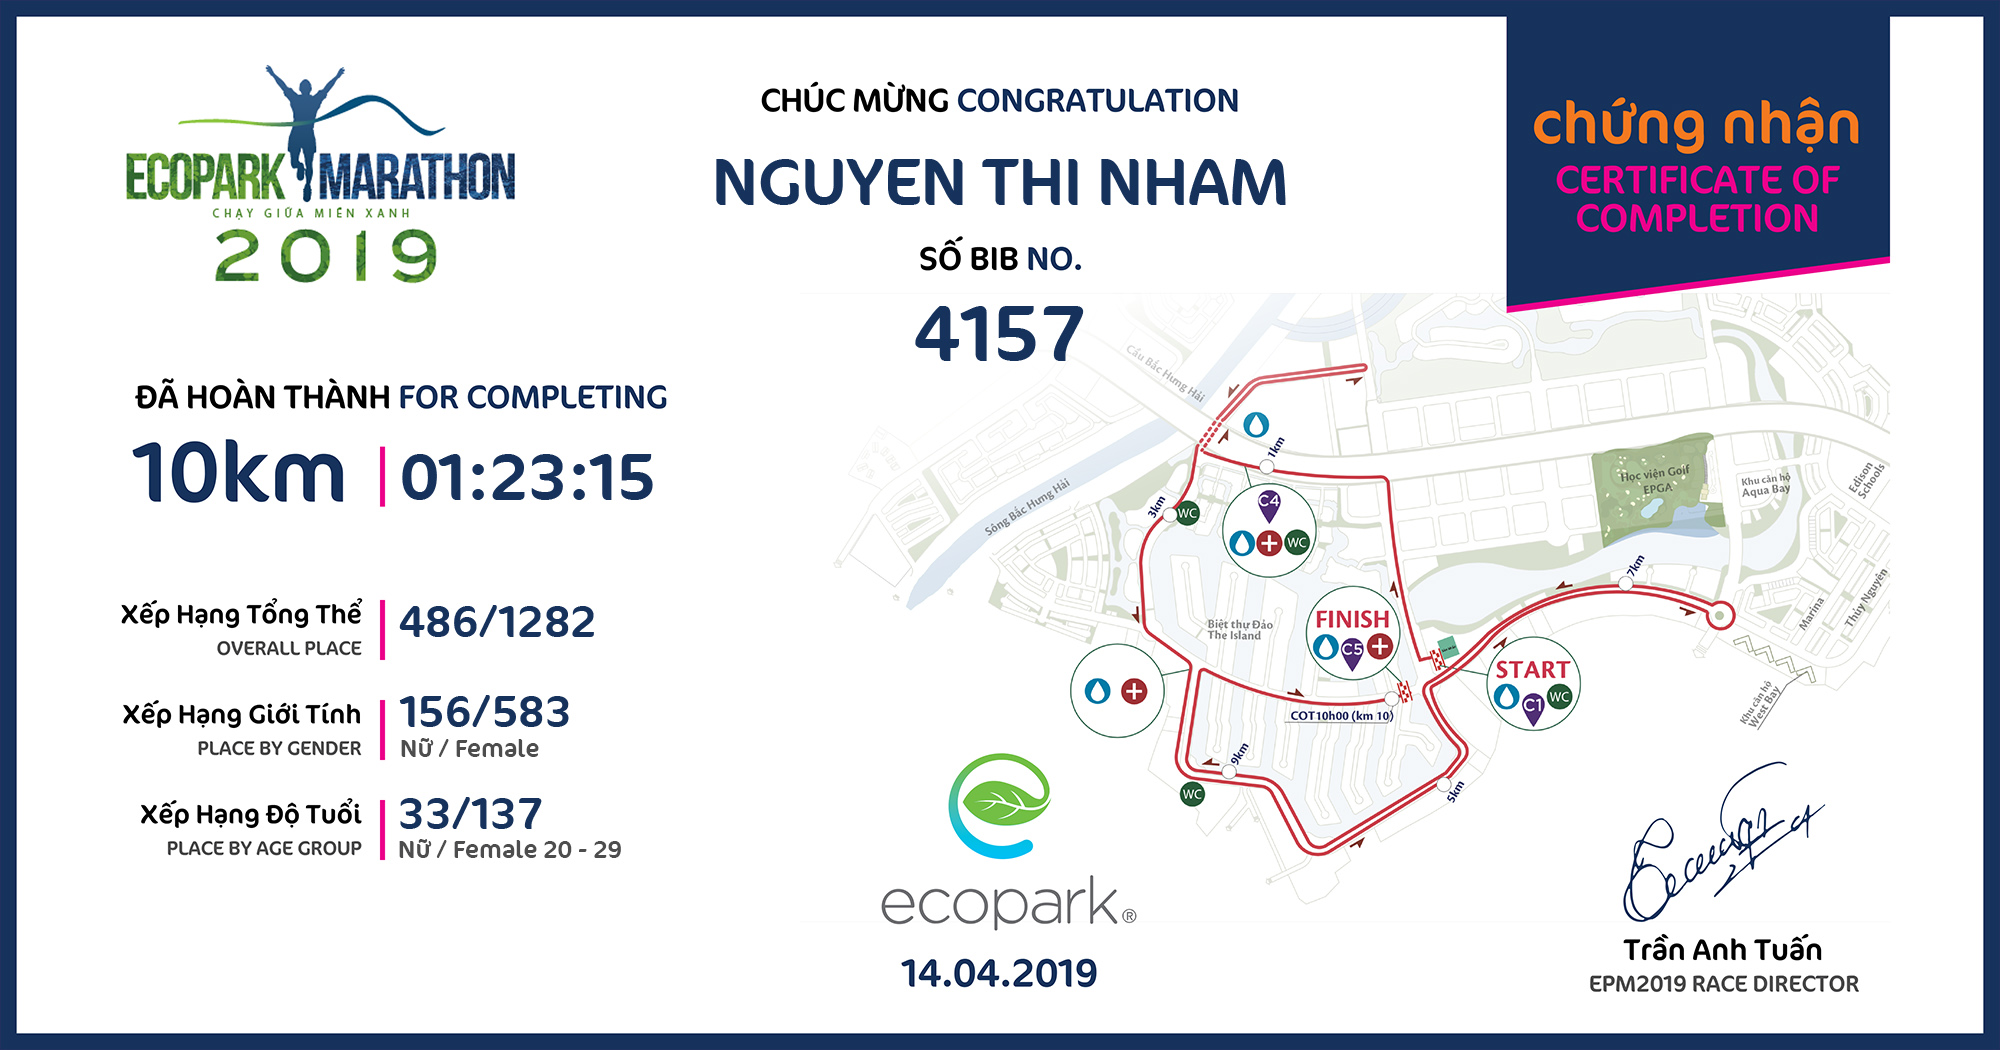 4157 - Nguyen Thi Nham